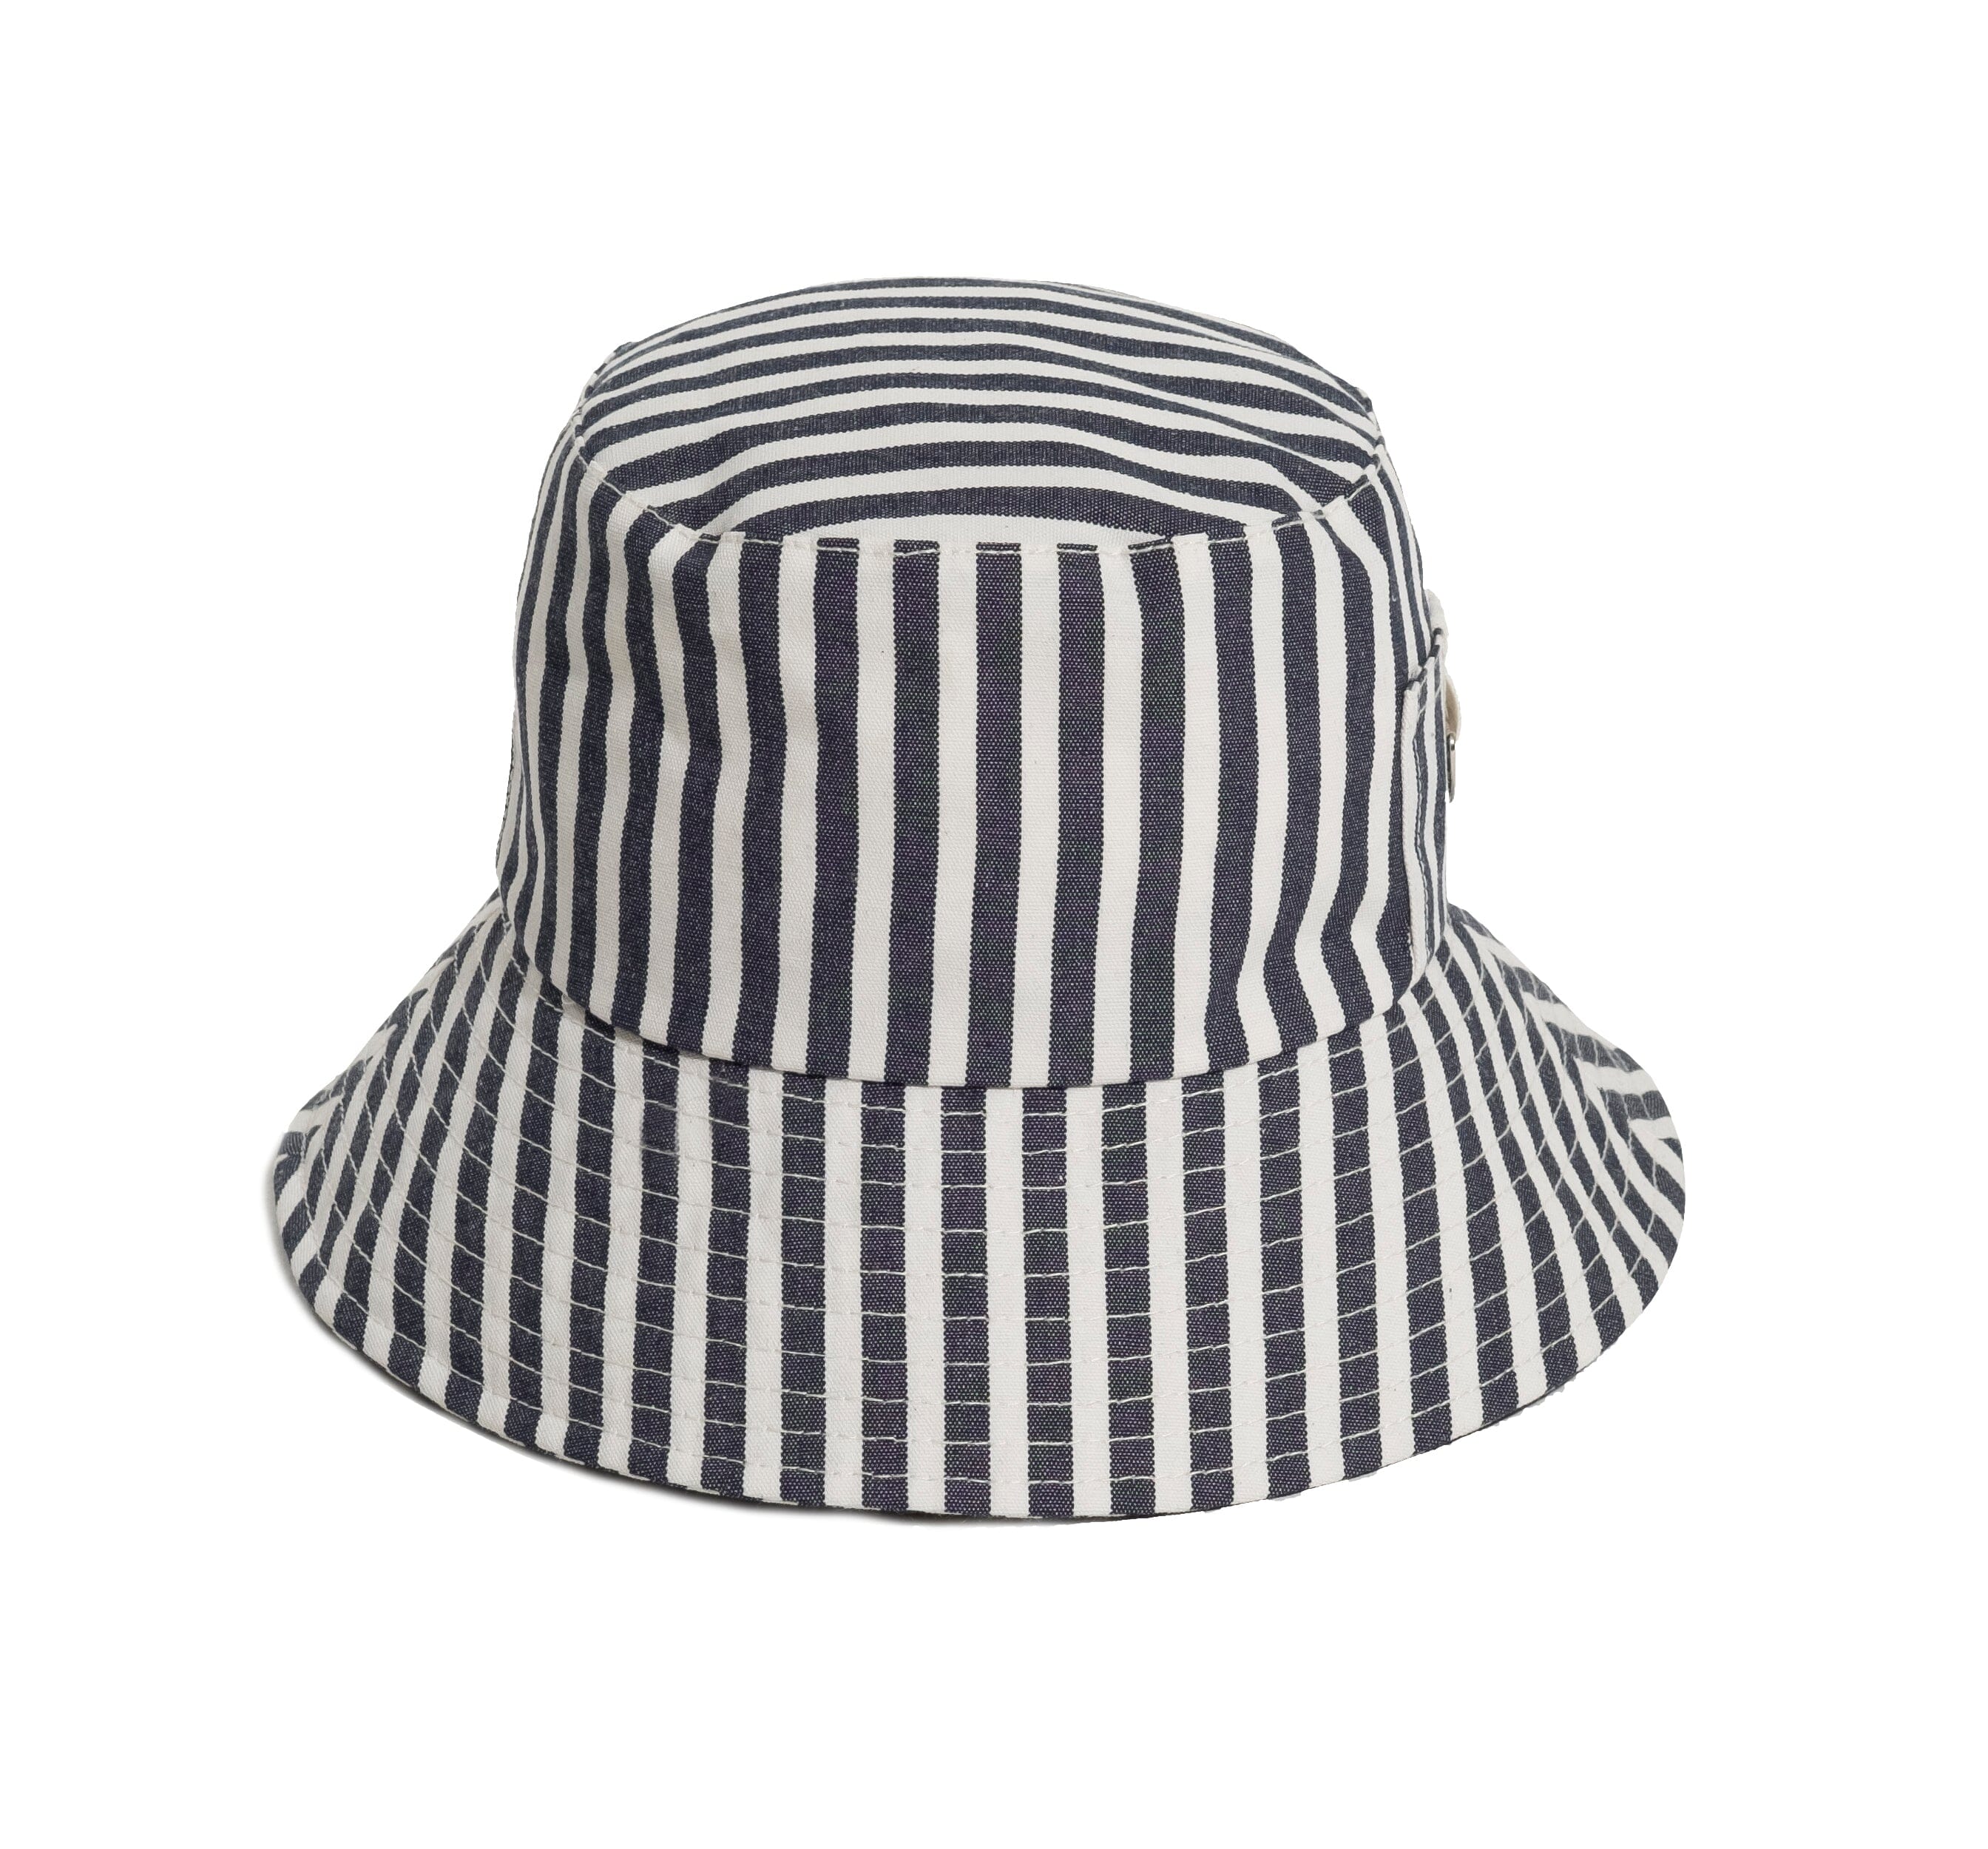 The Bucket Hat - Lauren's Navy Stripe Hats Business & Pleasure Co 